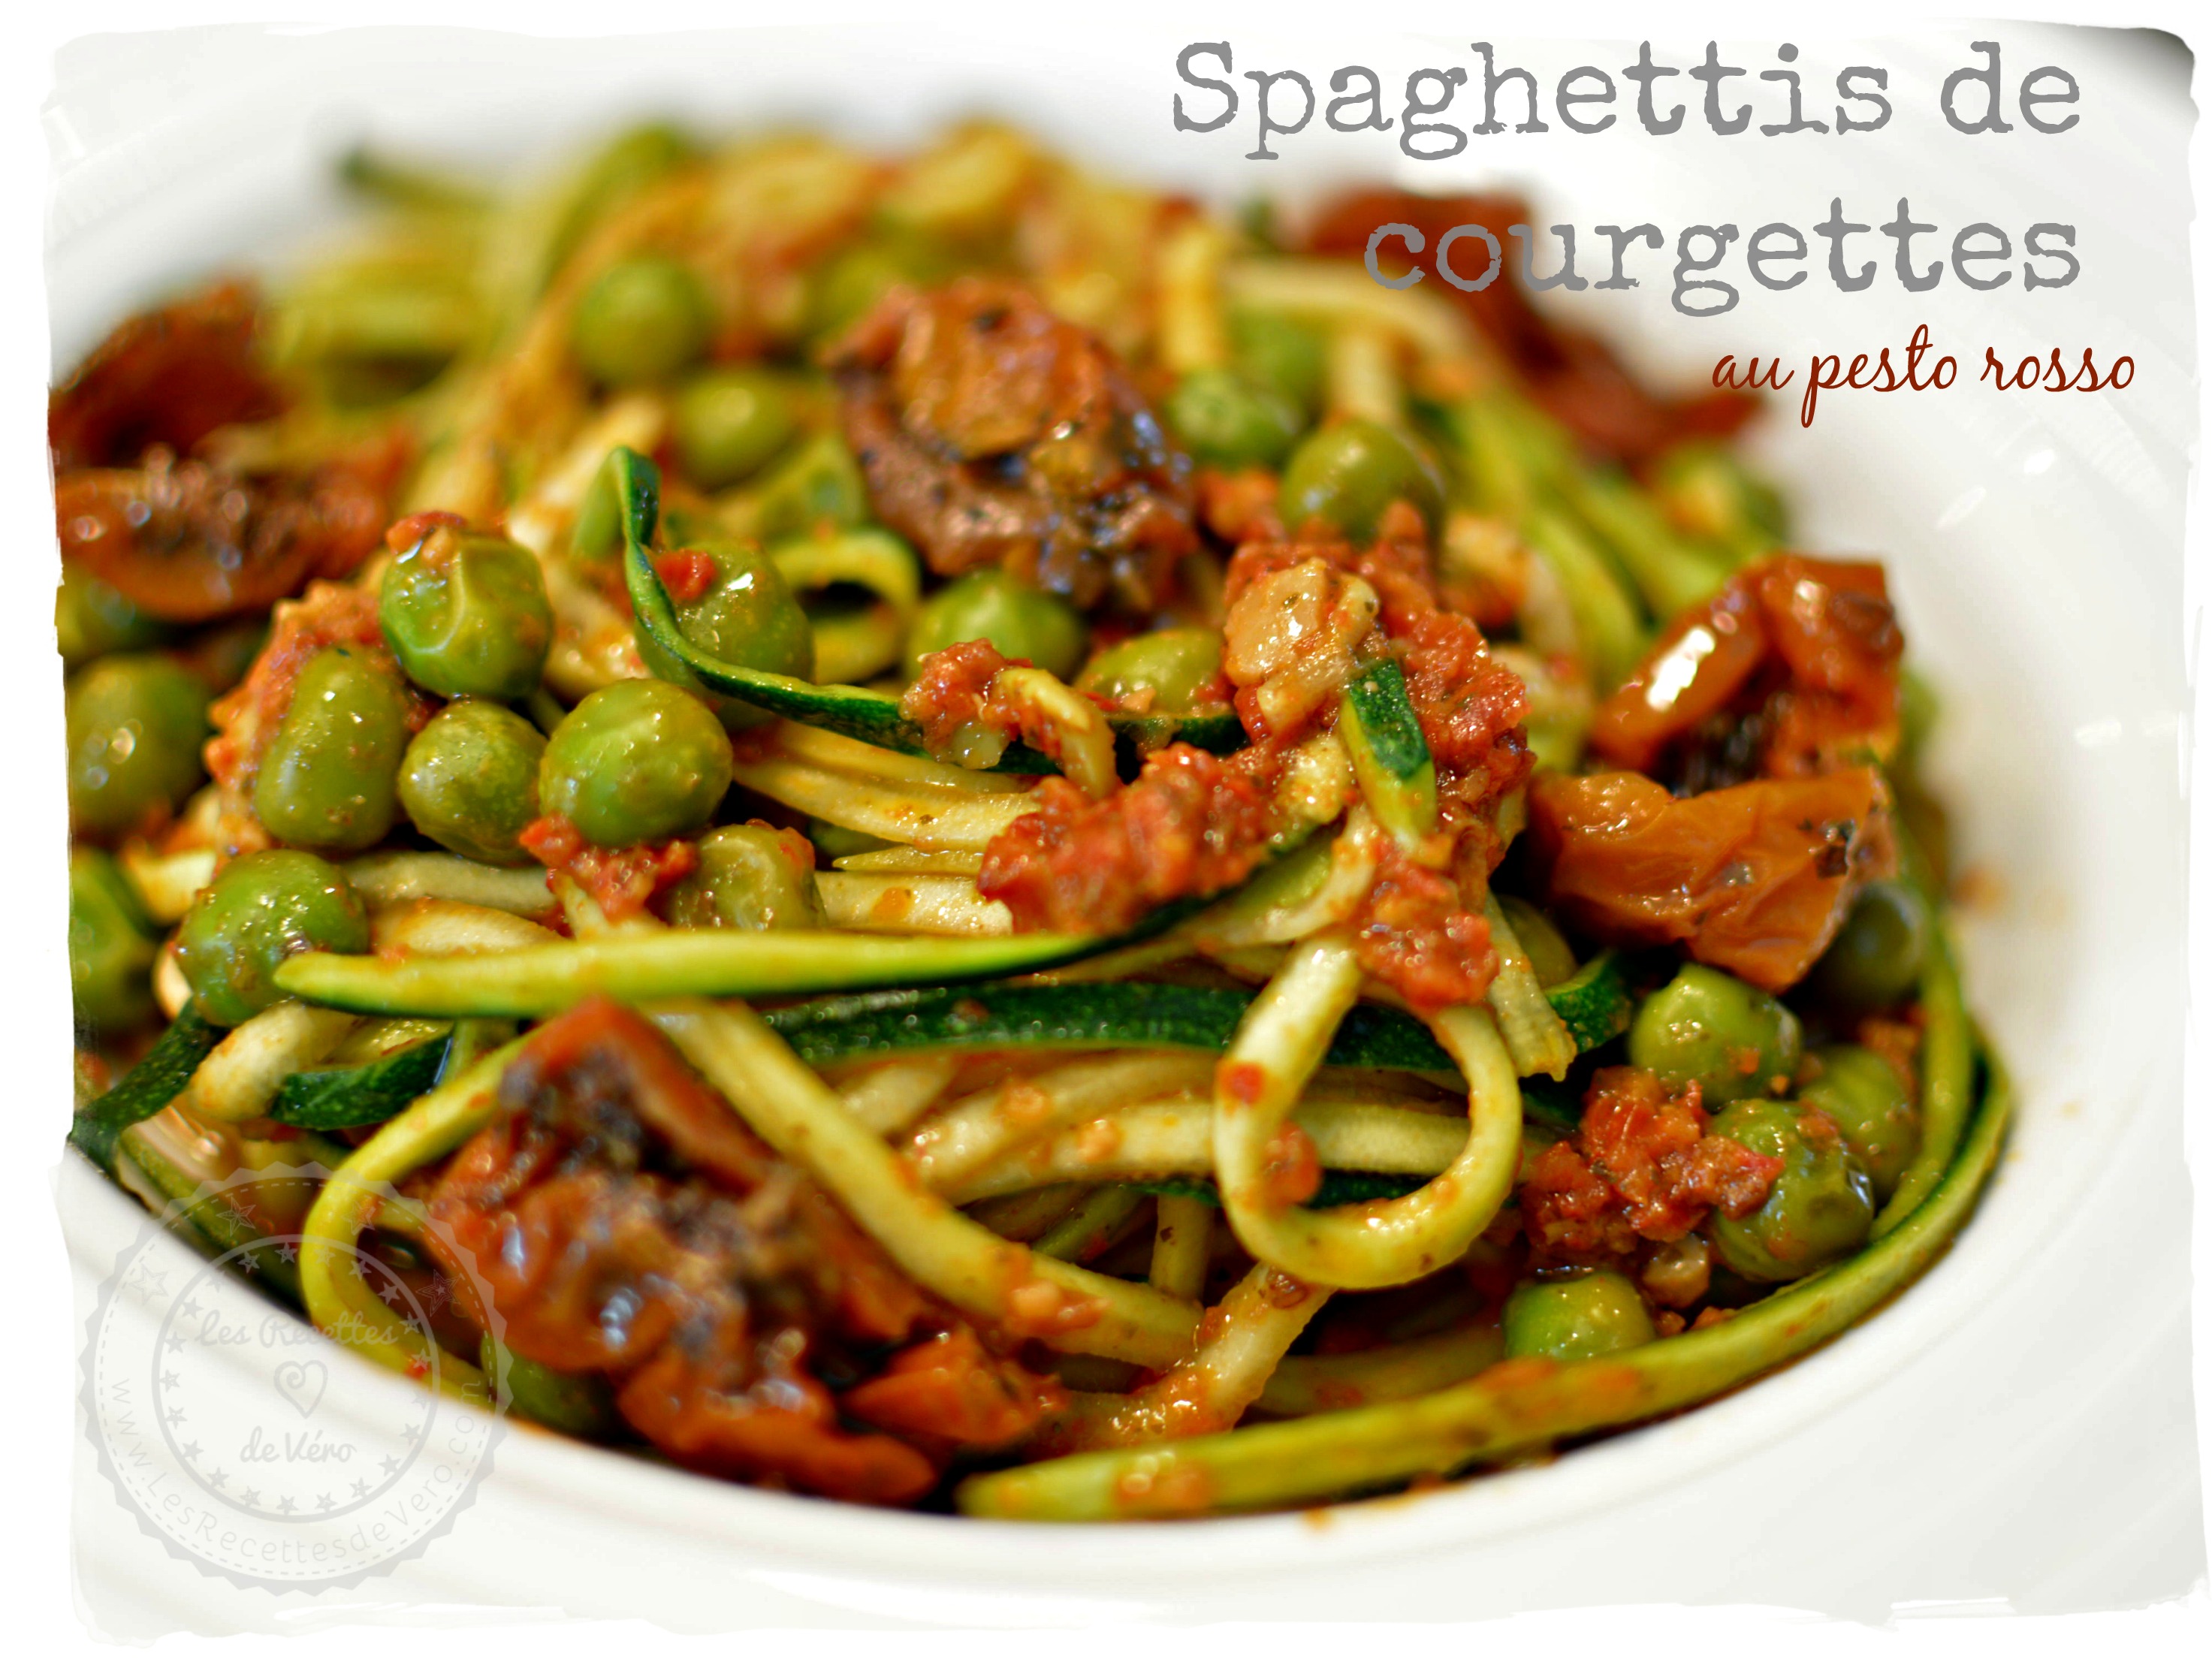 Spaghettis de courgettes blog